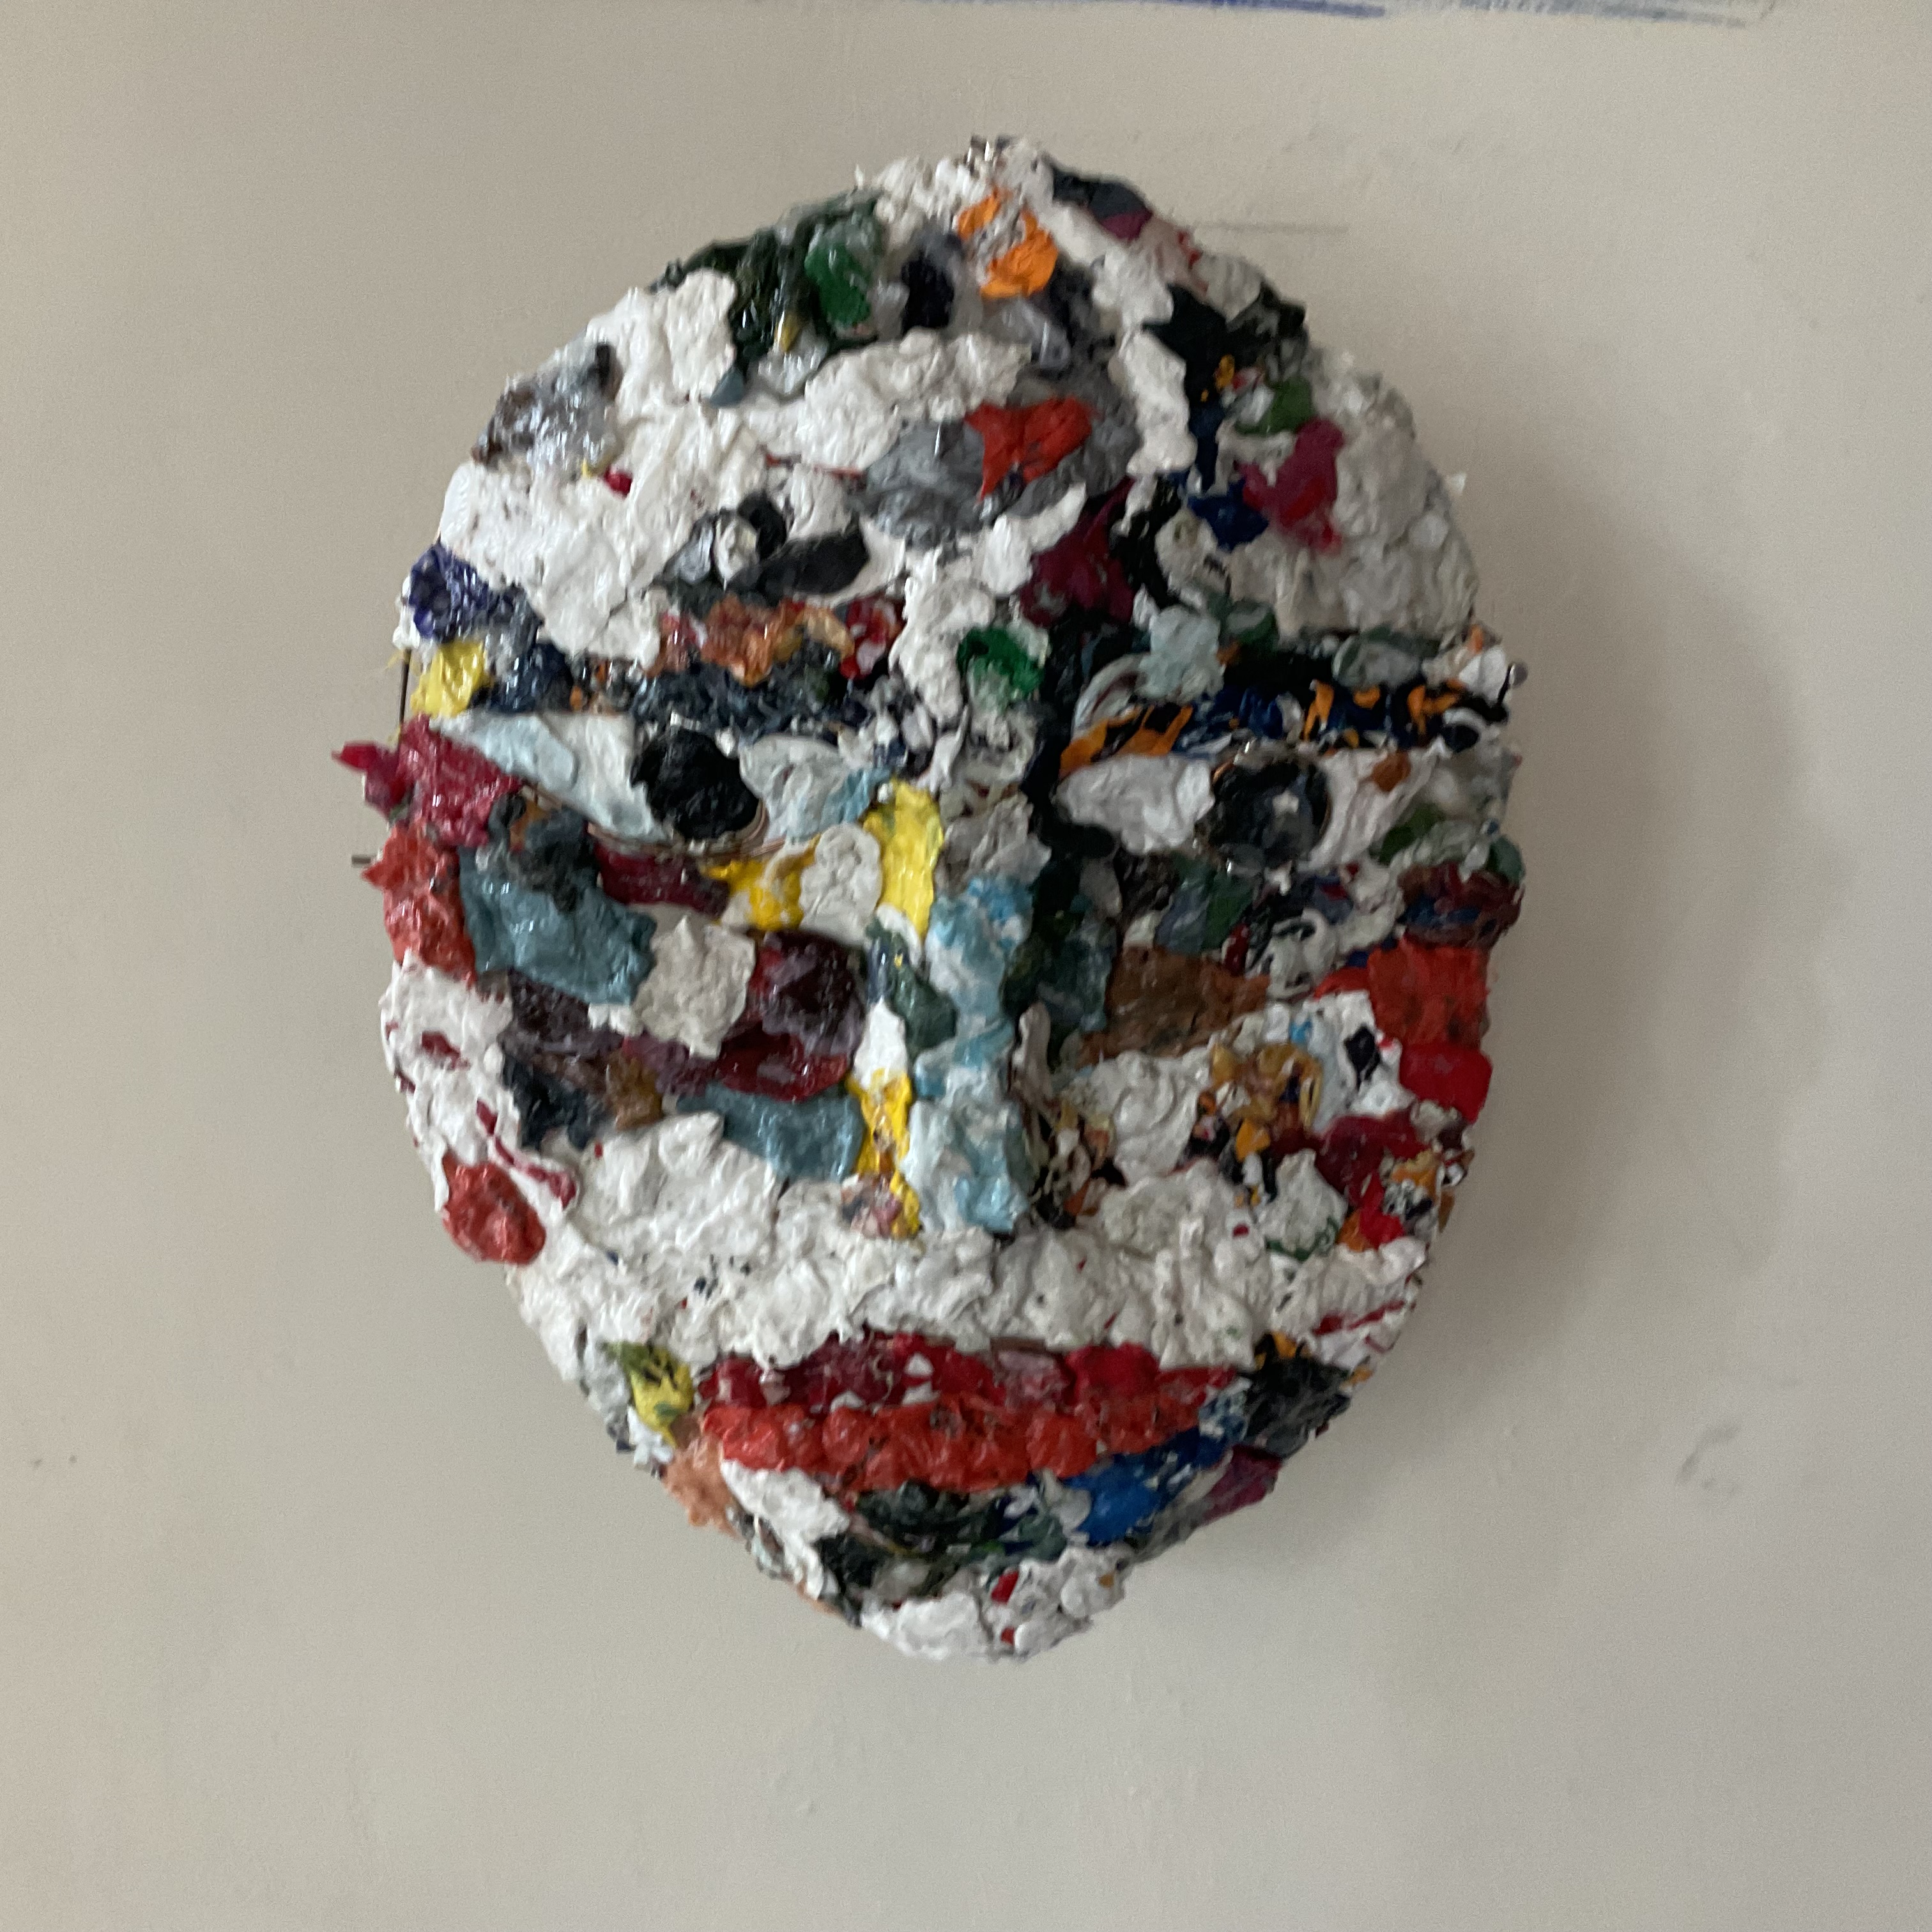 Masque cleanplanet (plastique recyclé)